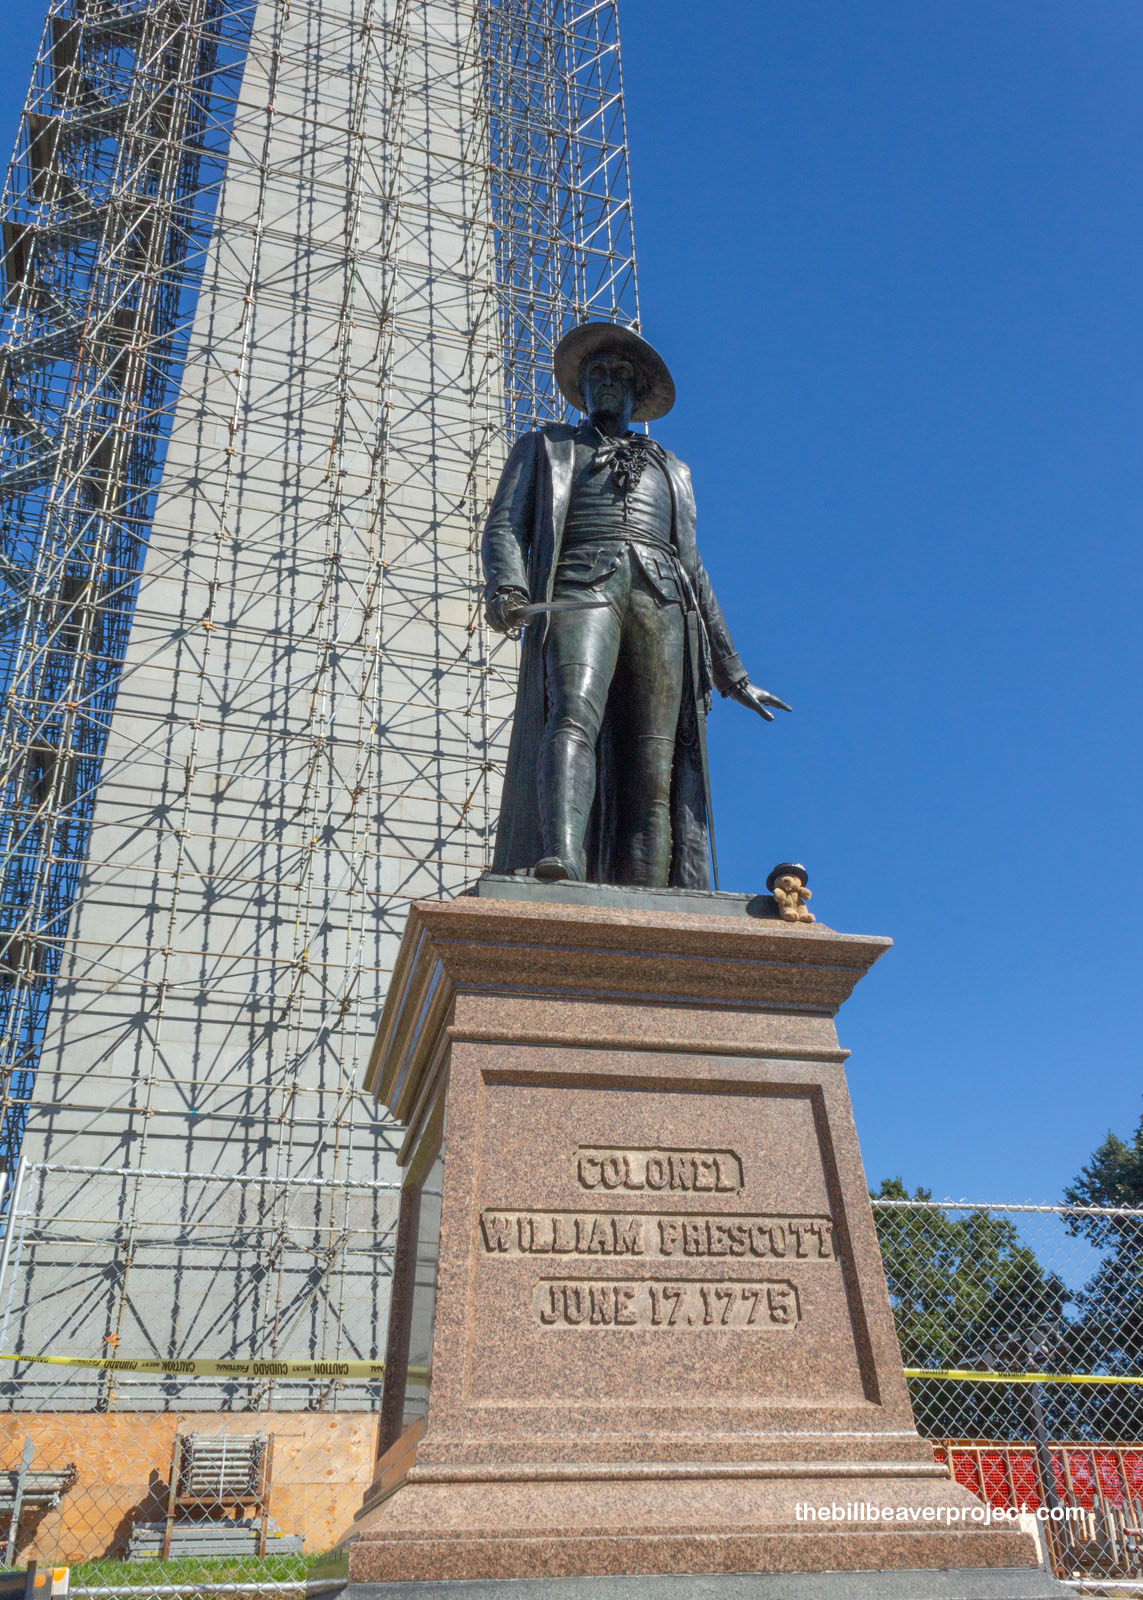 A statue of Colonel William Prescott!